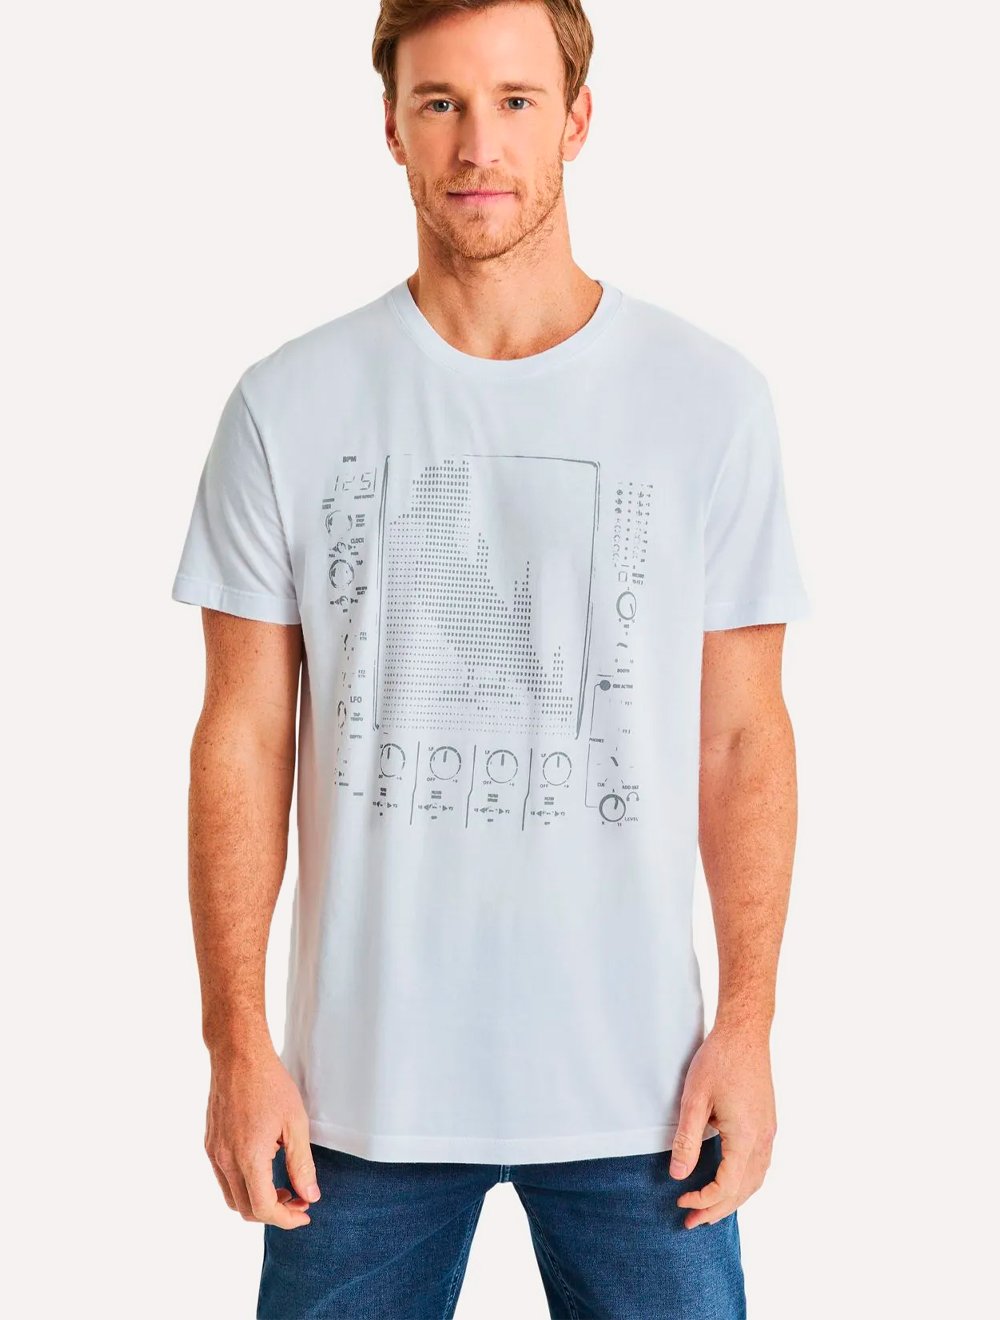 Camiseta Reserva Masculina Estampada Eletro Sample Branca